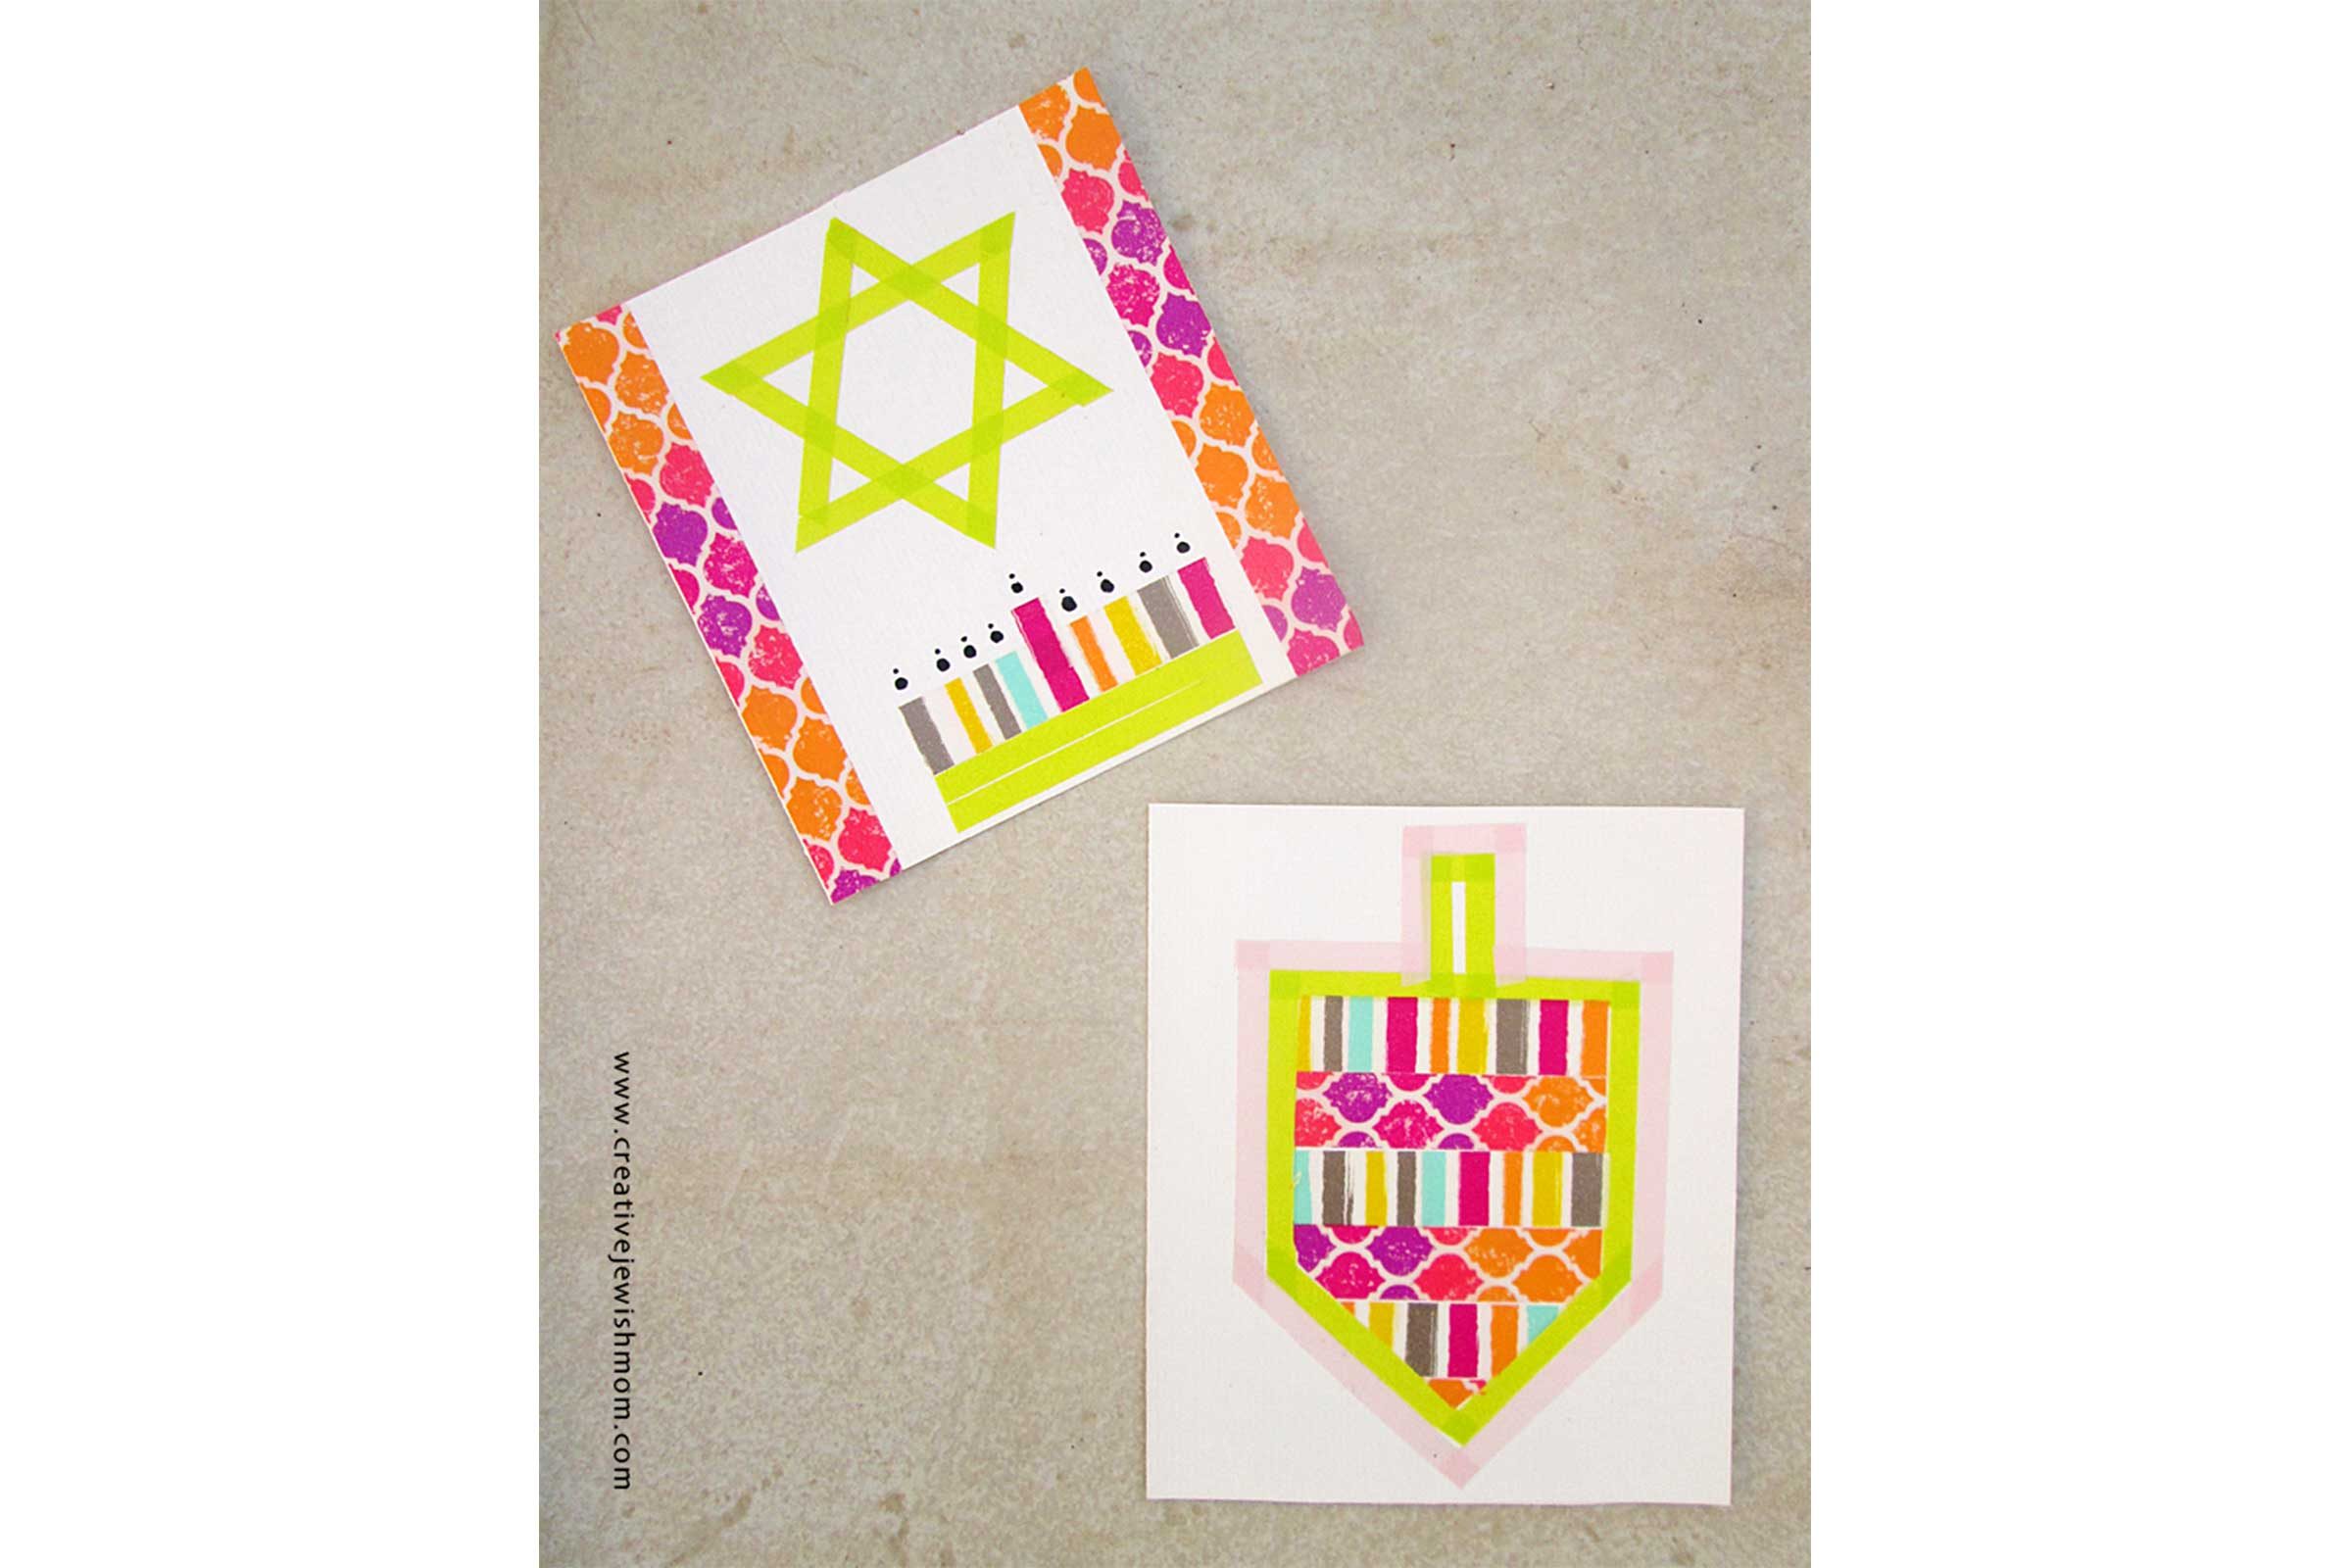 Make Fun Chanukah Cards With Washi Tape! - creative jewish mom